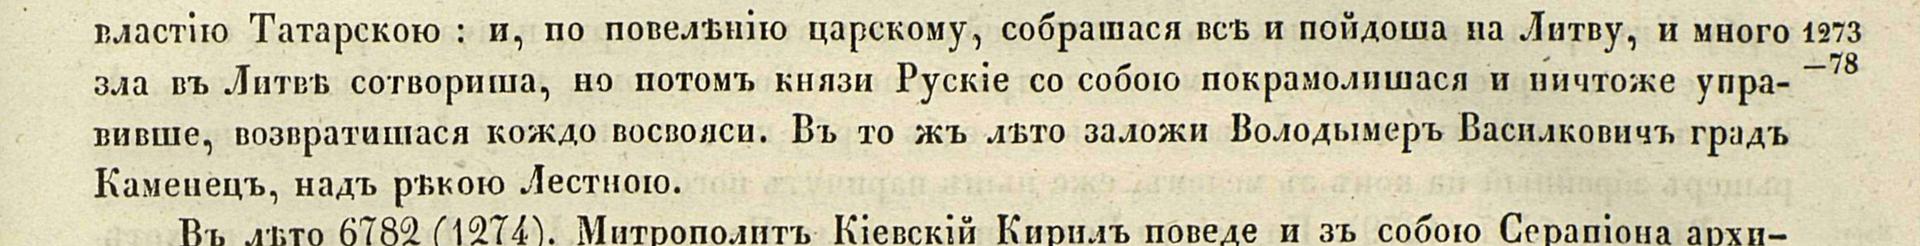 Густынская летопись стр. 345 1843 г.